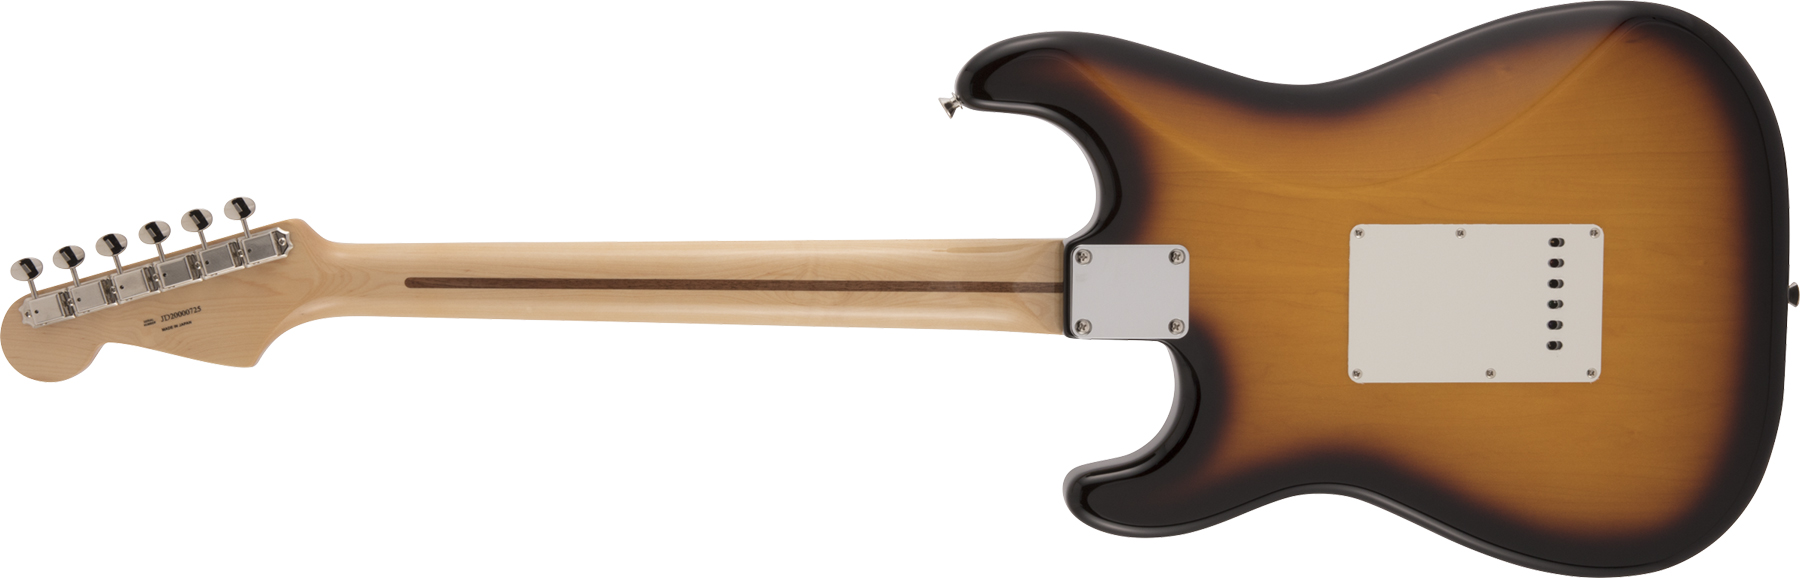 Fender Strat Traditional 50s Jap Mn - 2-color Sunburst - E-Gitarre in Str-Form - Variation 1